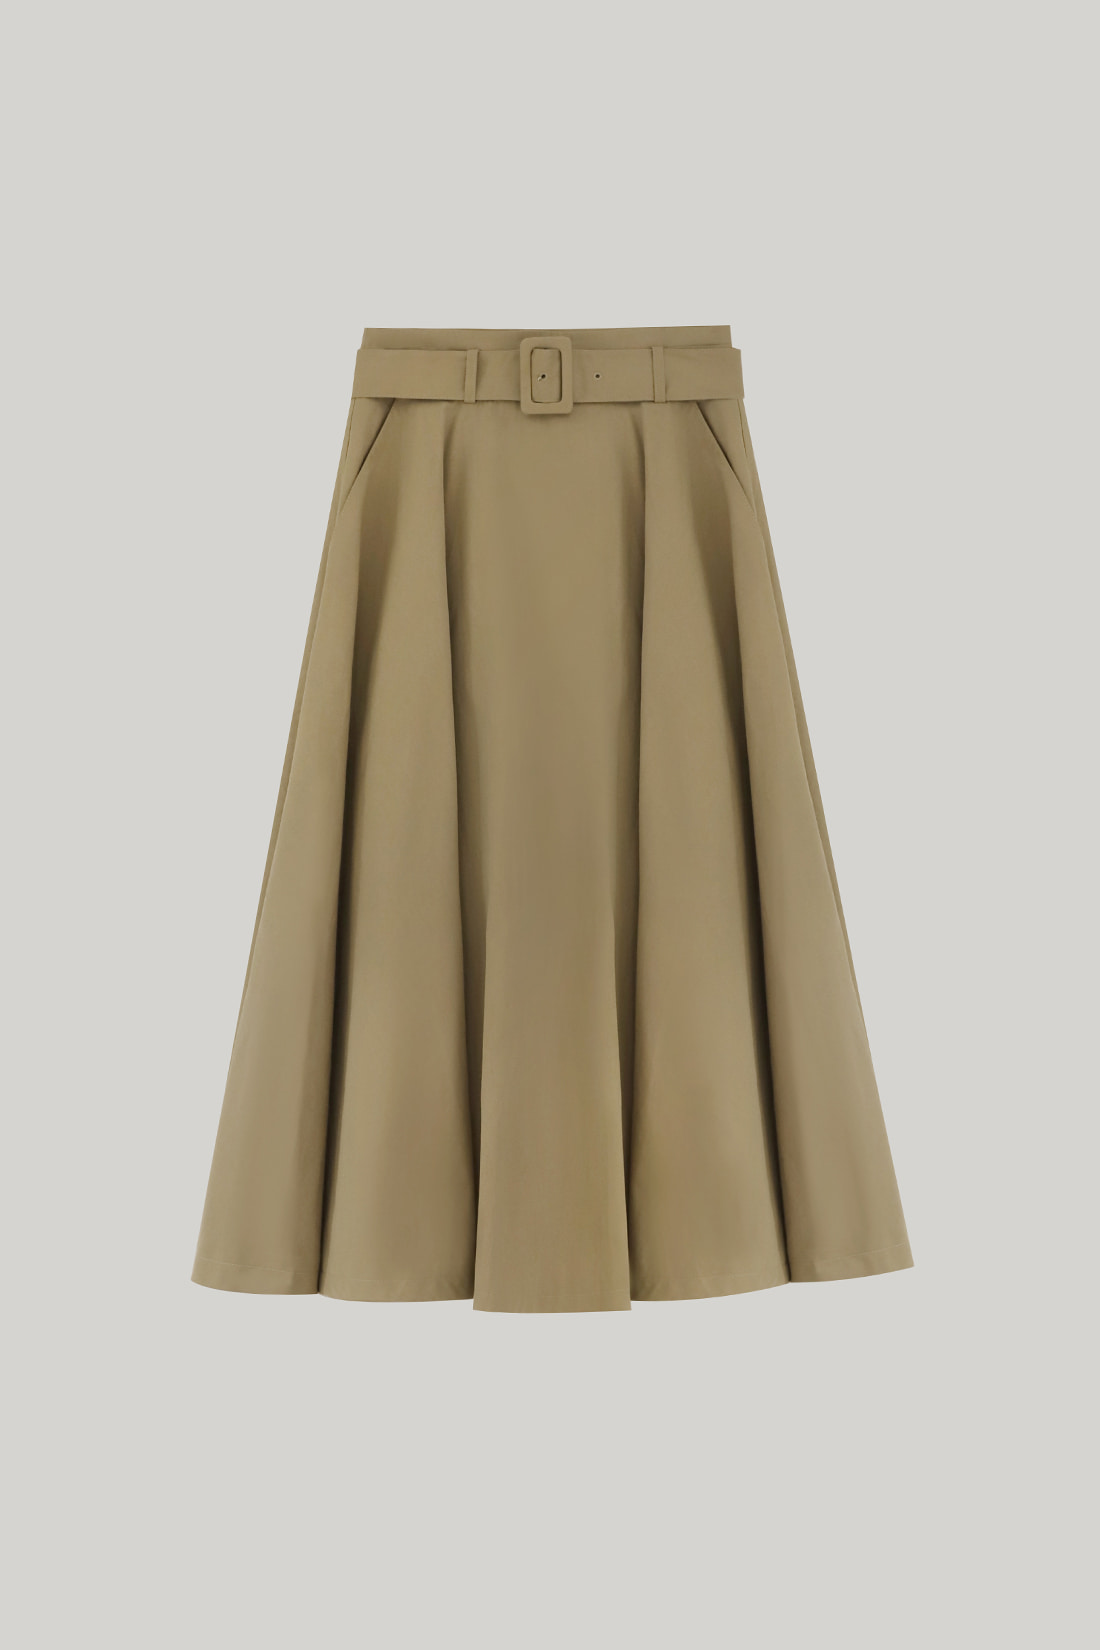 Loreley Flare Wrap Skirt (Beige)